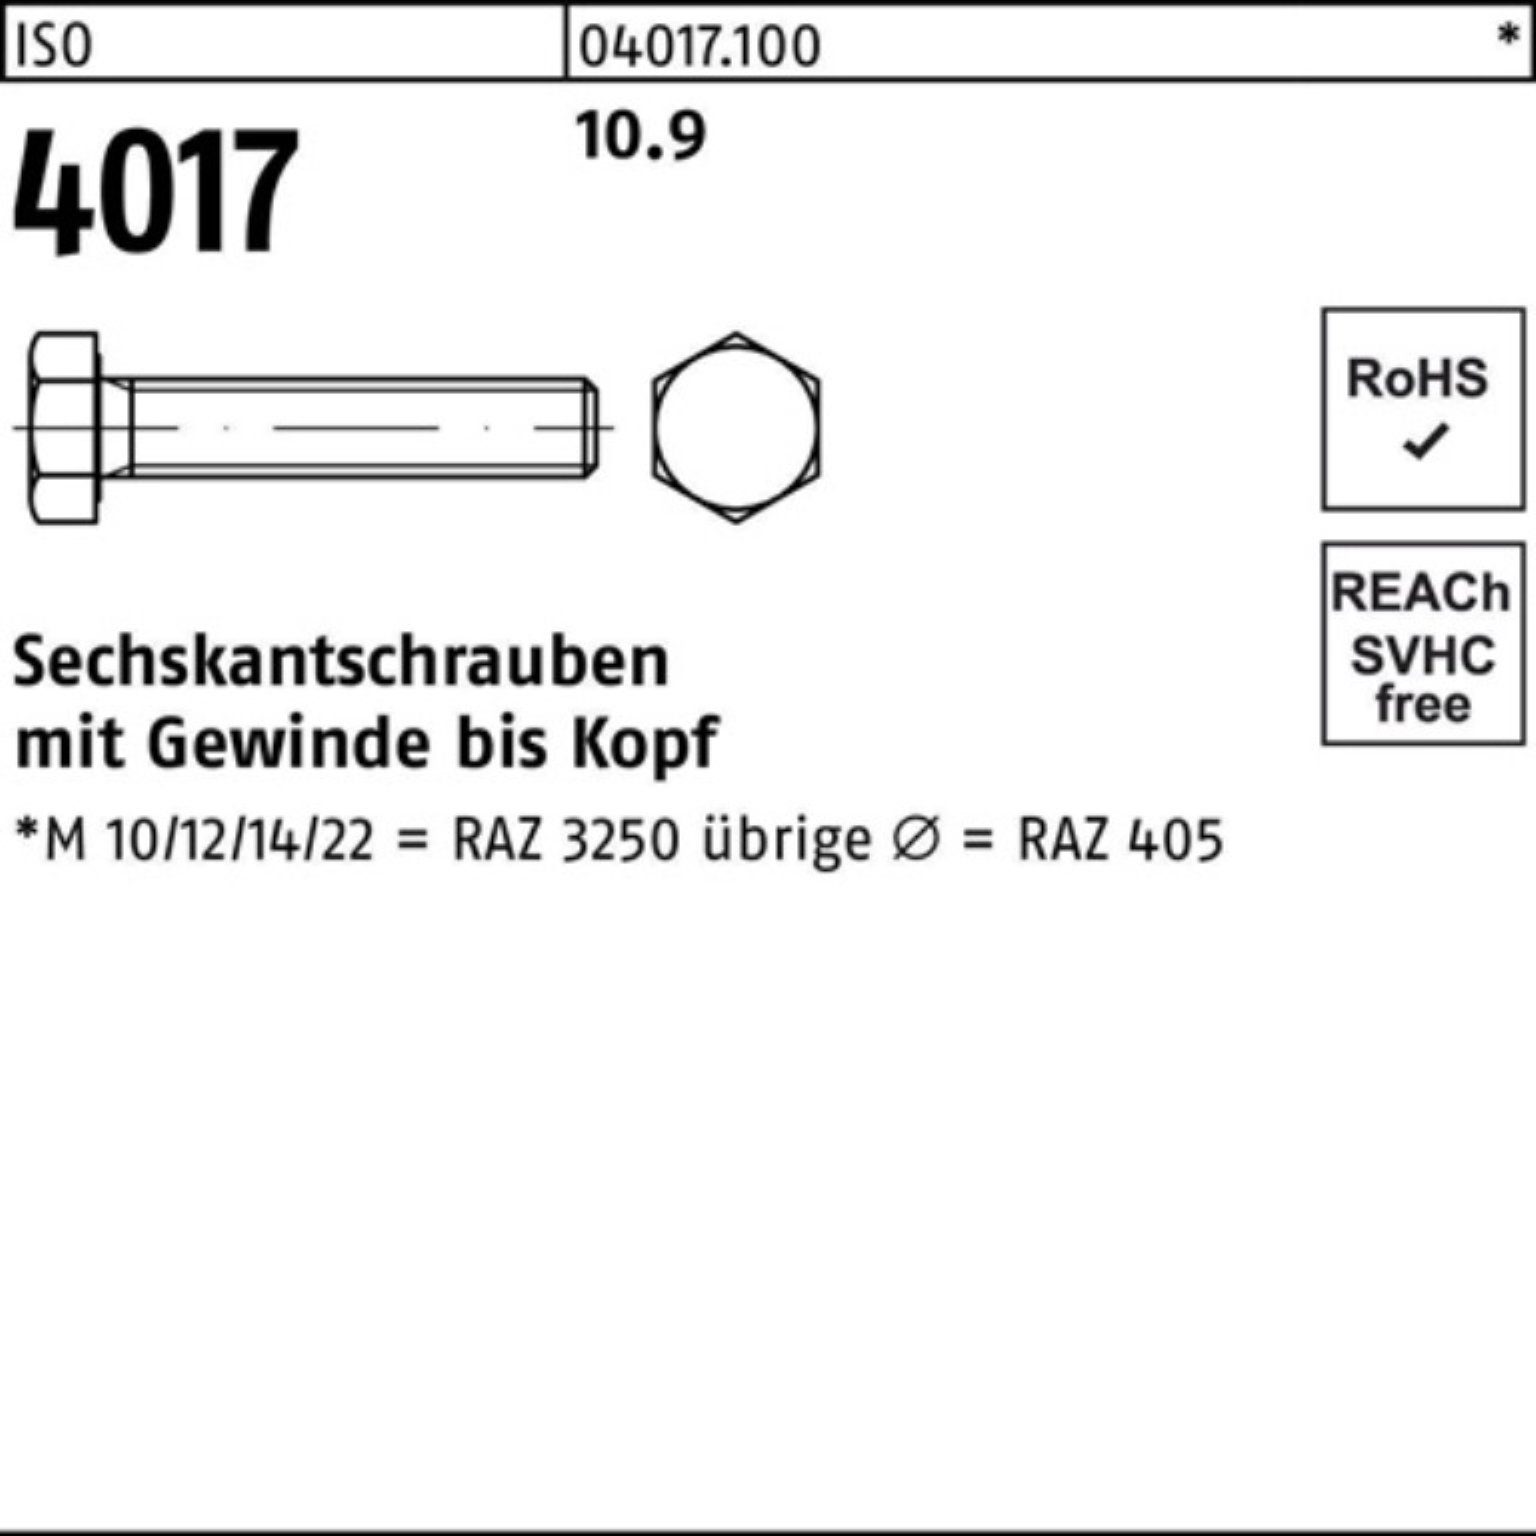 Bufab Sechskantschraube 100er 4017 40 50 10.9 VG Stück ISO Pack M14x Sechskantschraube 90 ISO